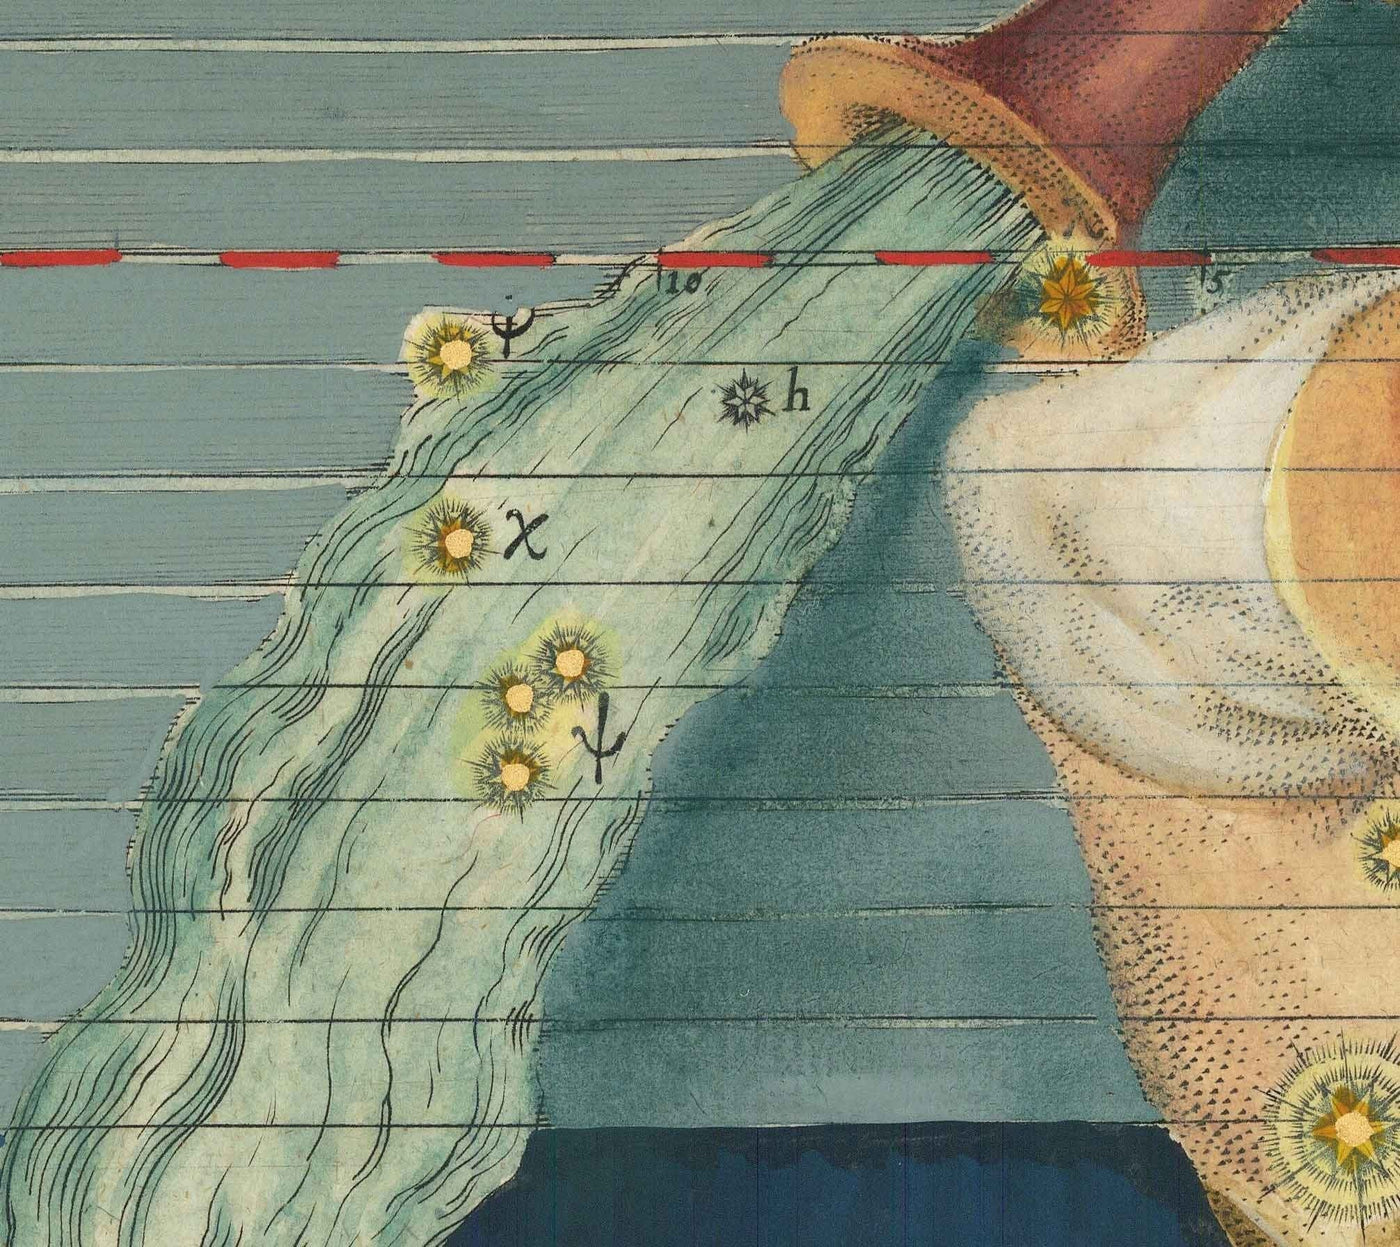 Alte Sternkarte des Wassermanns, 1603 von Johann Bayer - Zodiac Astrology Diagramm - Das Wasserträger -Horoskopzeichen